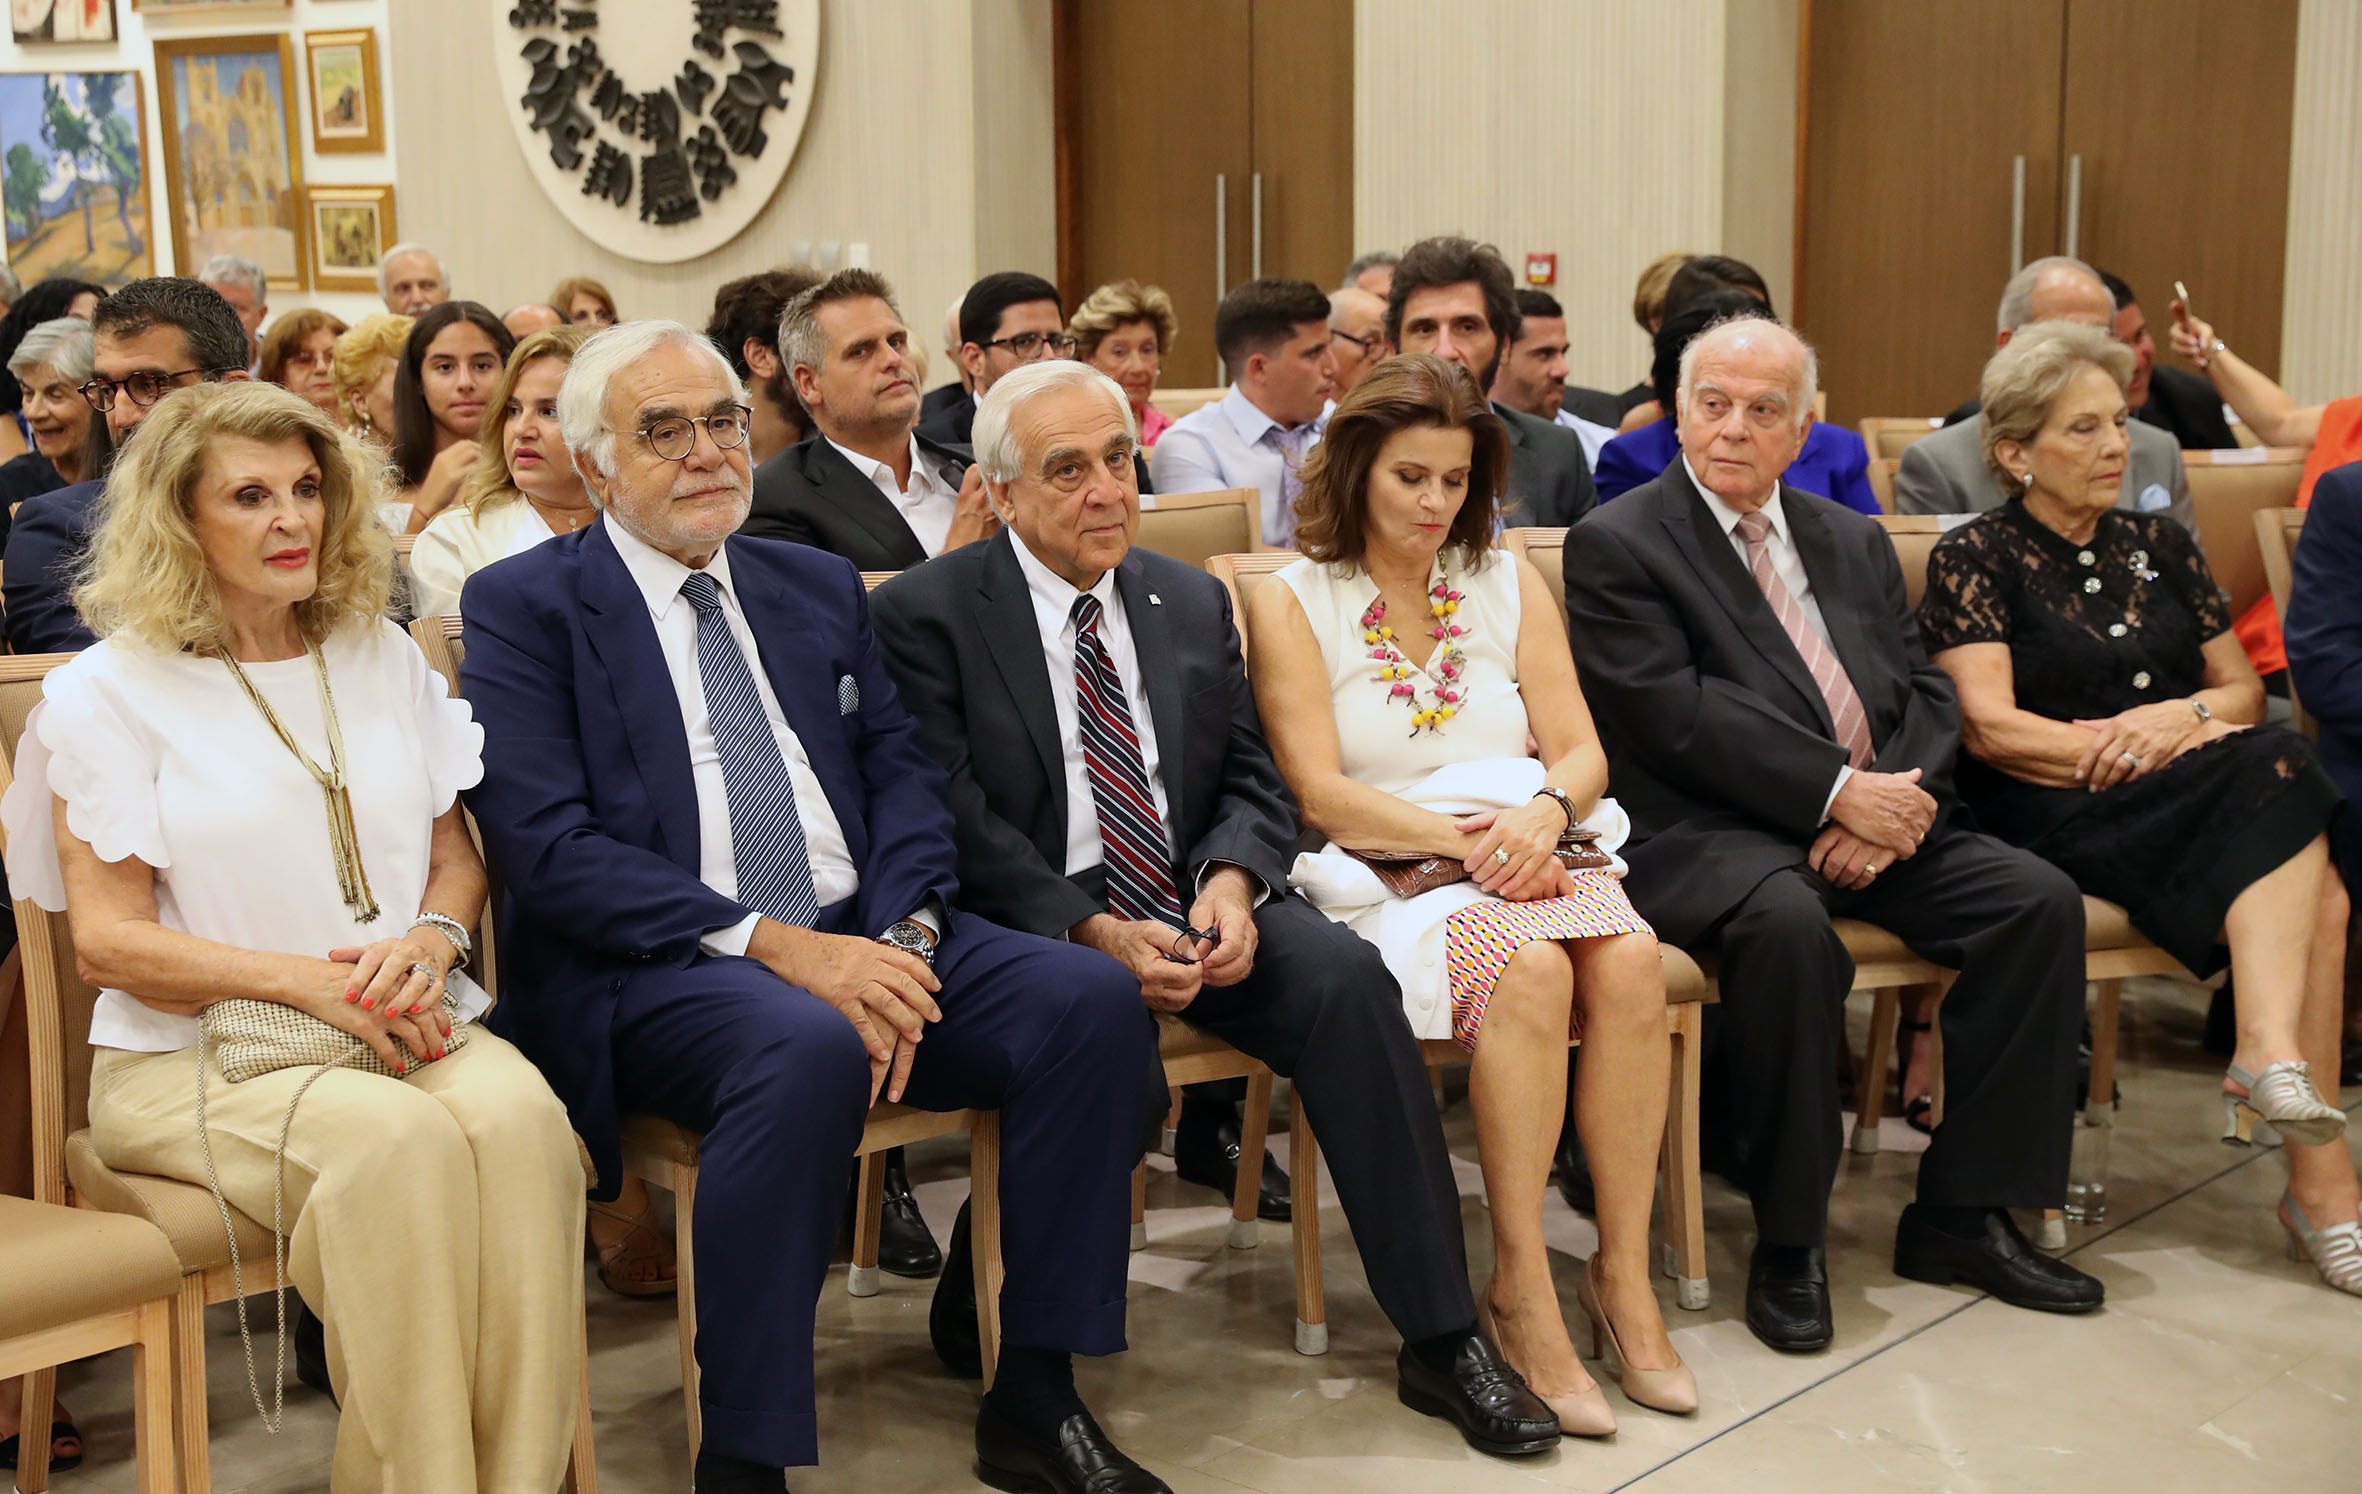 Ο Πρόεδρος απένειμε μετάλλια εξαίρετης προσφοράς προς την Κυπριακή Δημοκρατία σε τρεις προσωπικότητες 